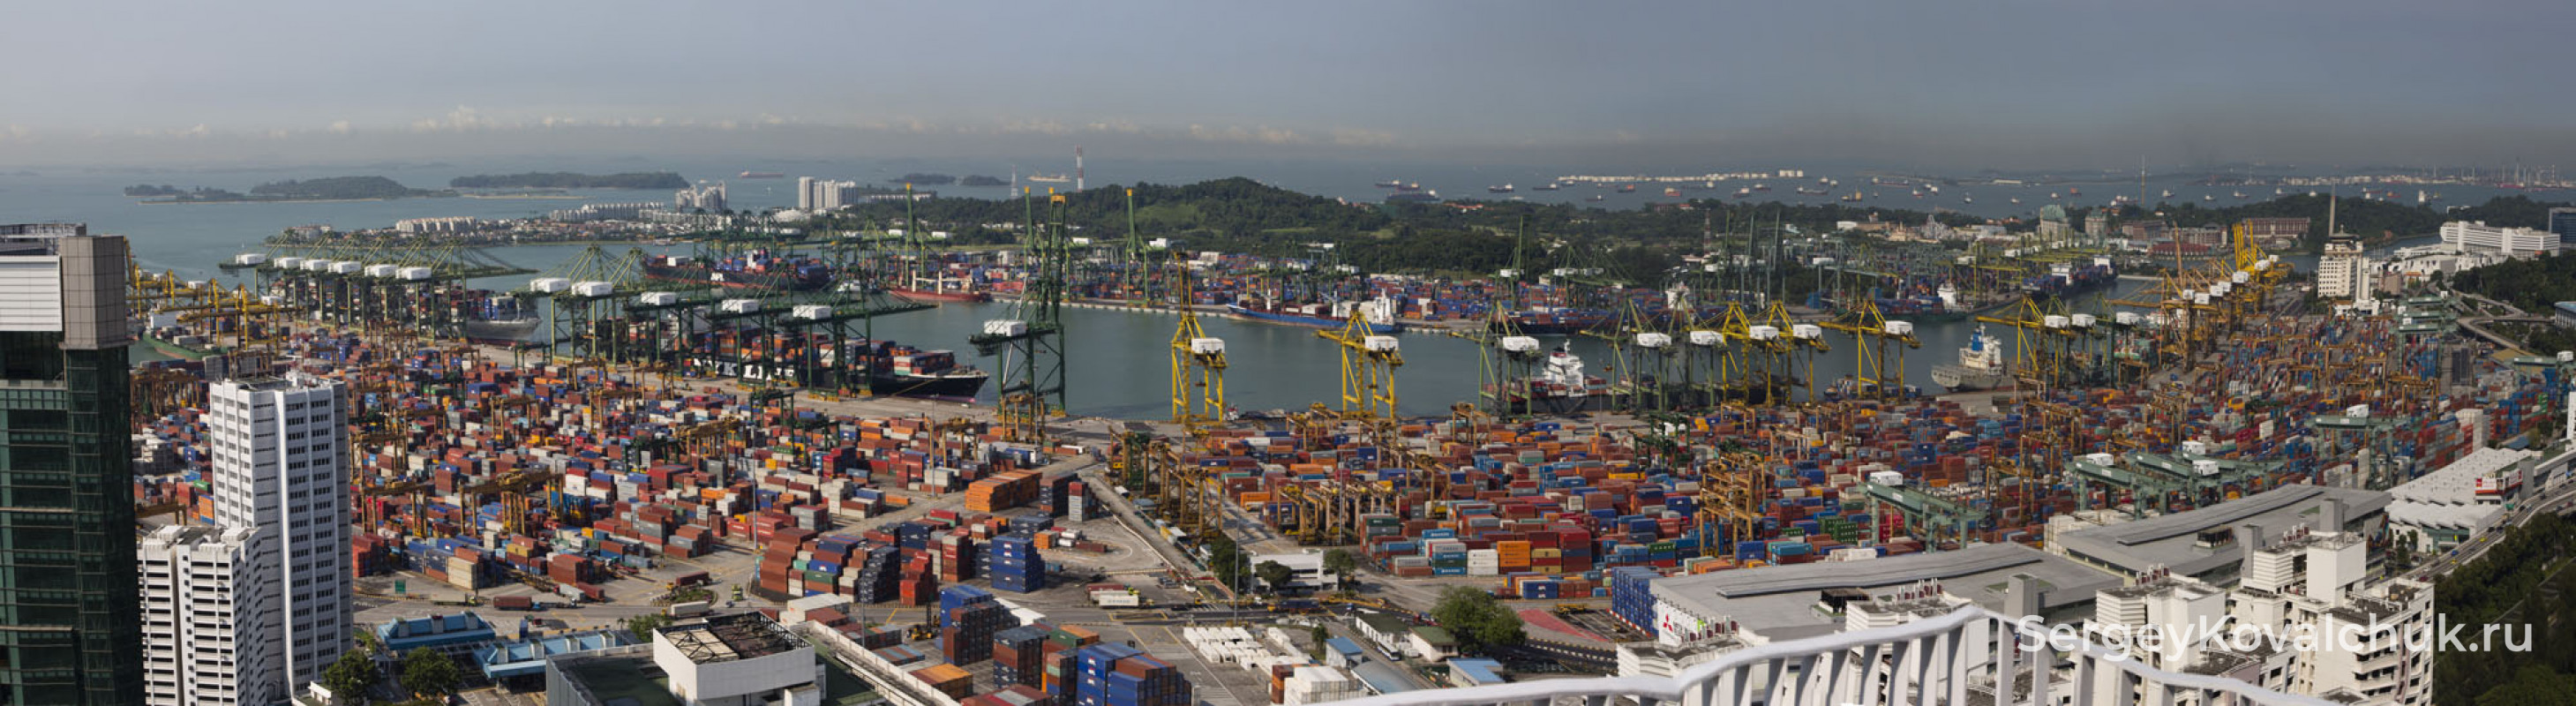 Порт Сингапура входит в пятерку крупнейших портов мира.